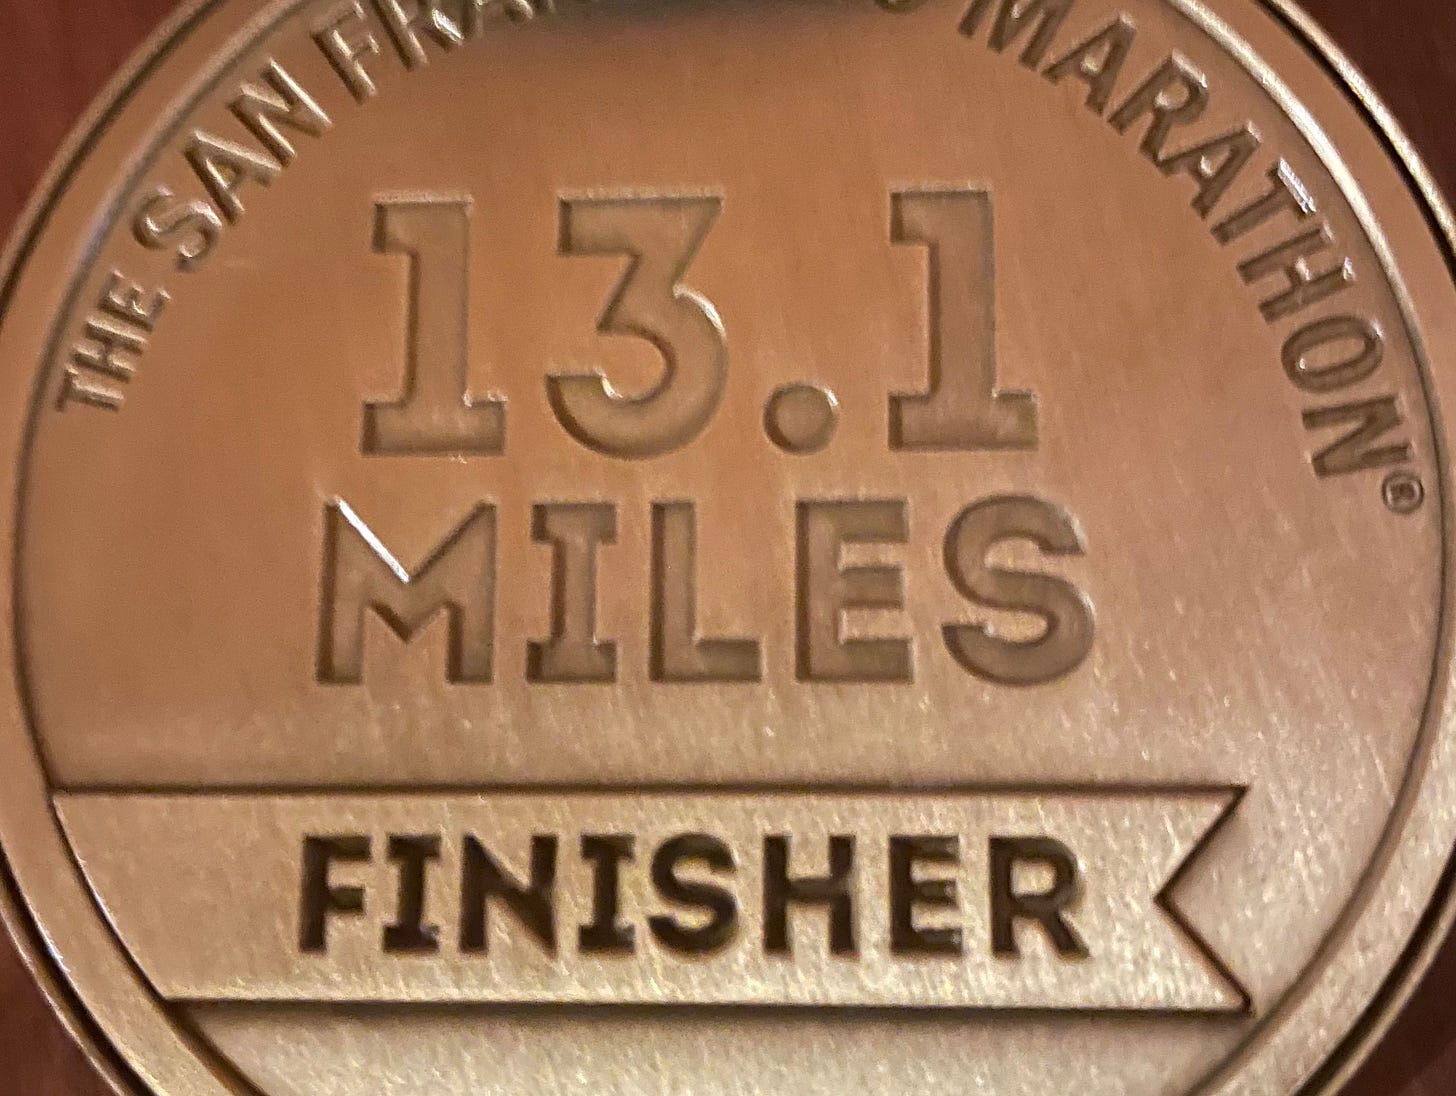 13.1 miles half marathon medal